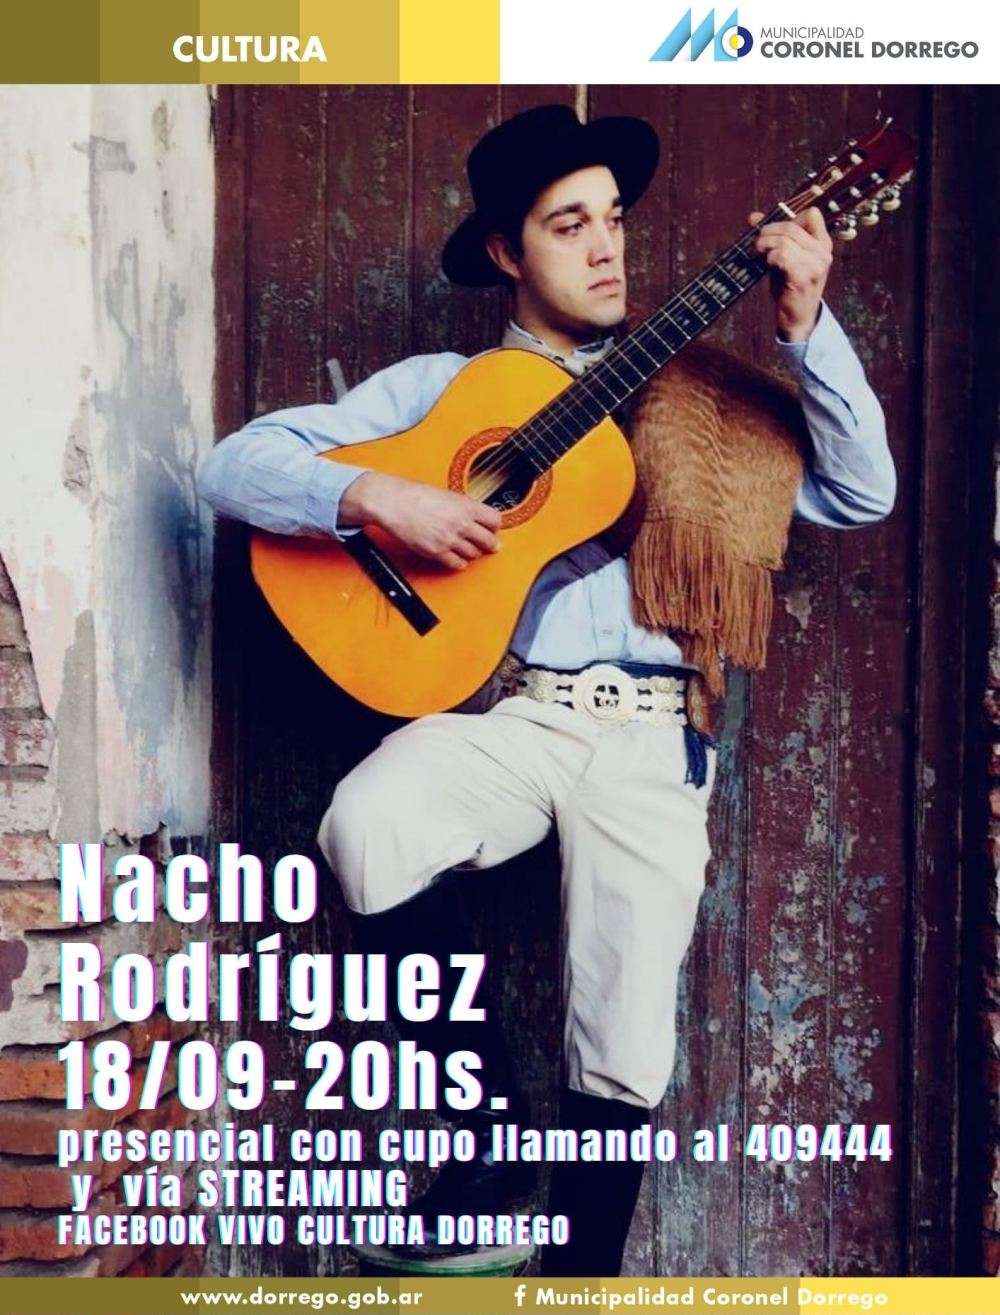  Nacho Rodríguez actuará en el Centro Cultural